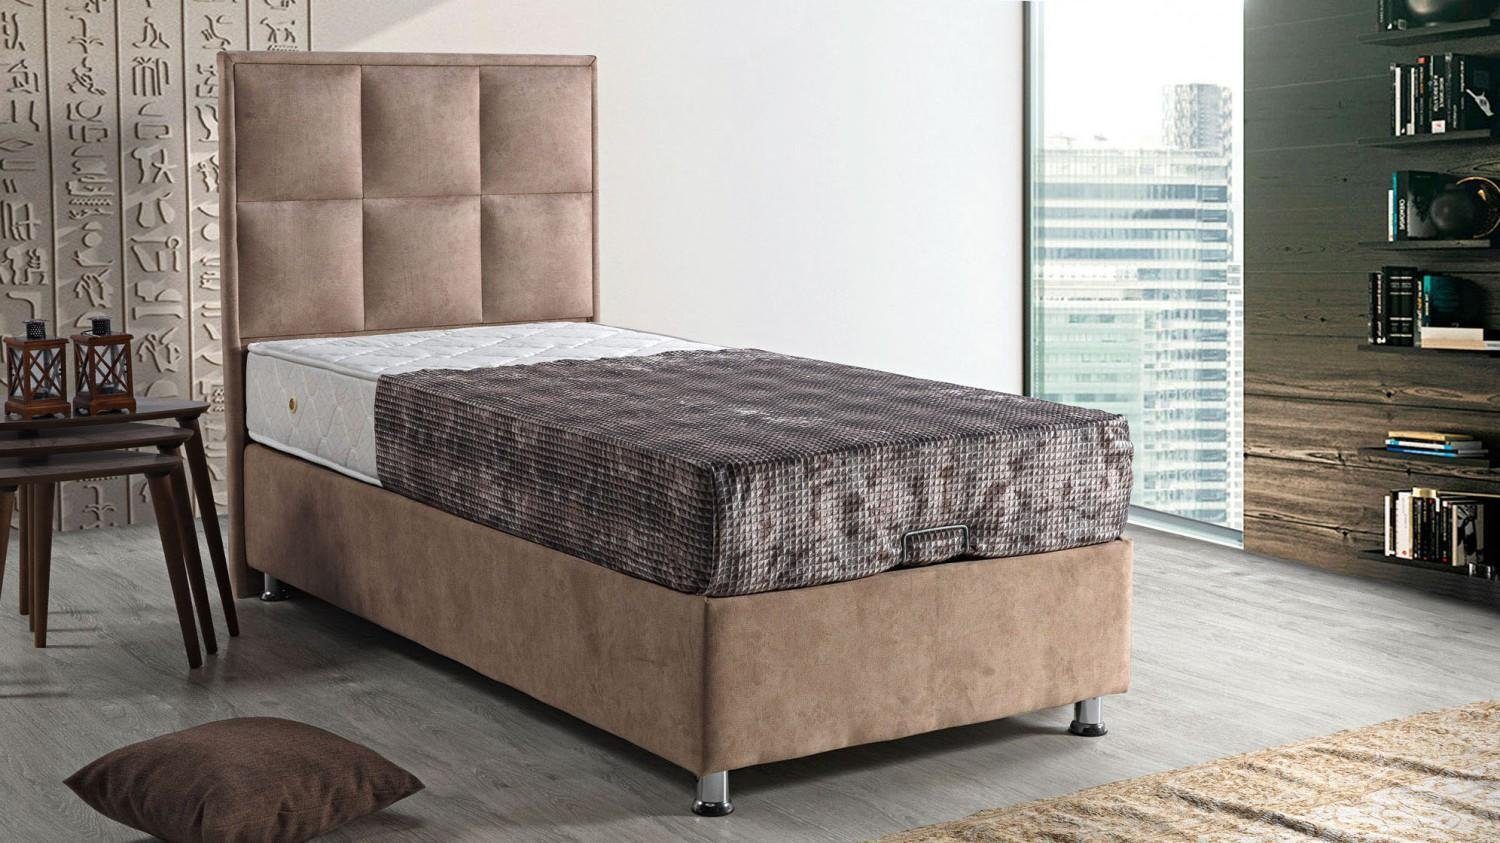 JVmoebel Bett Bett Design Betten Luxus Polster Schlafzimmer Möbel Modern 90x190 (Bett), Made In Europe